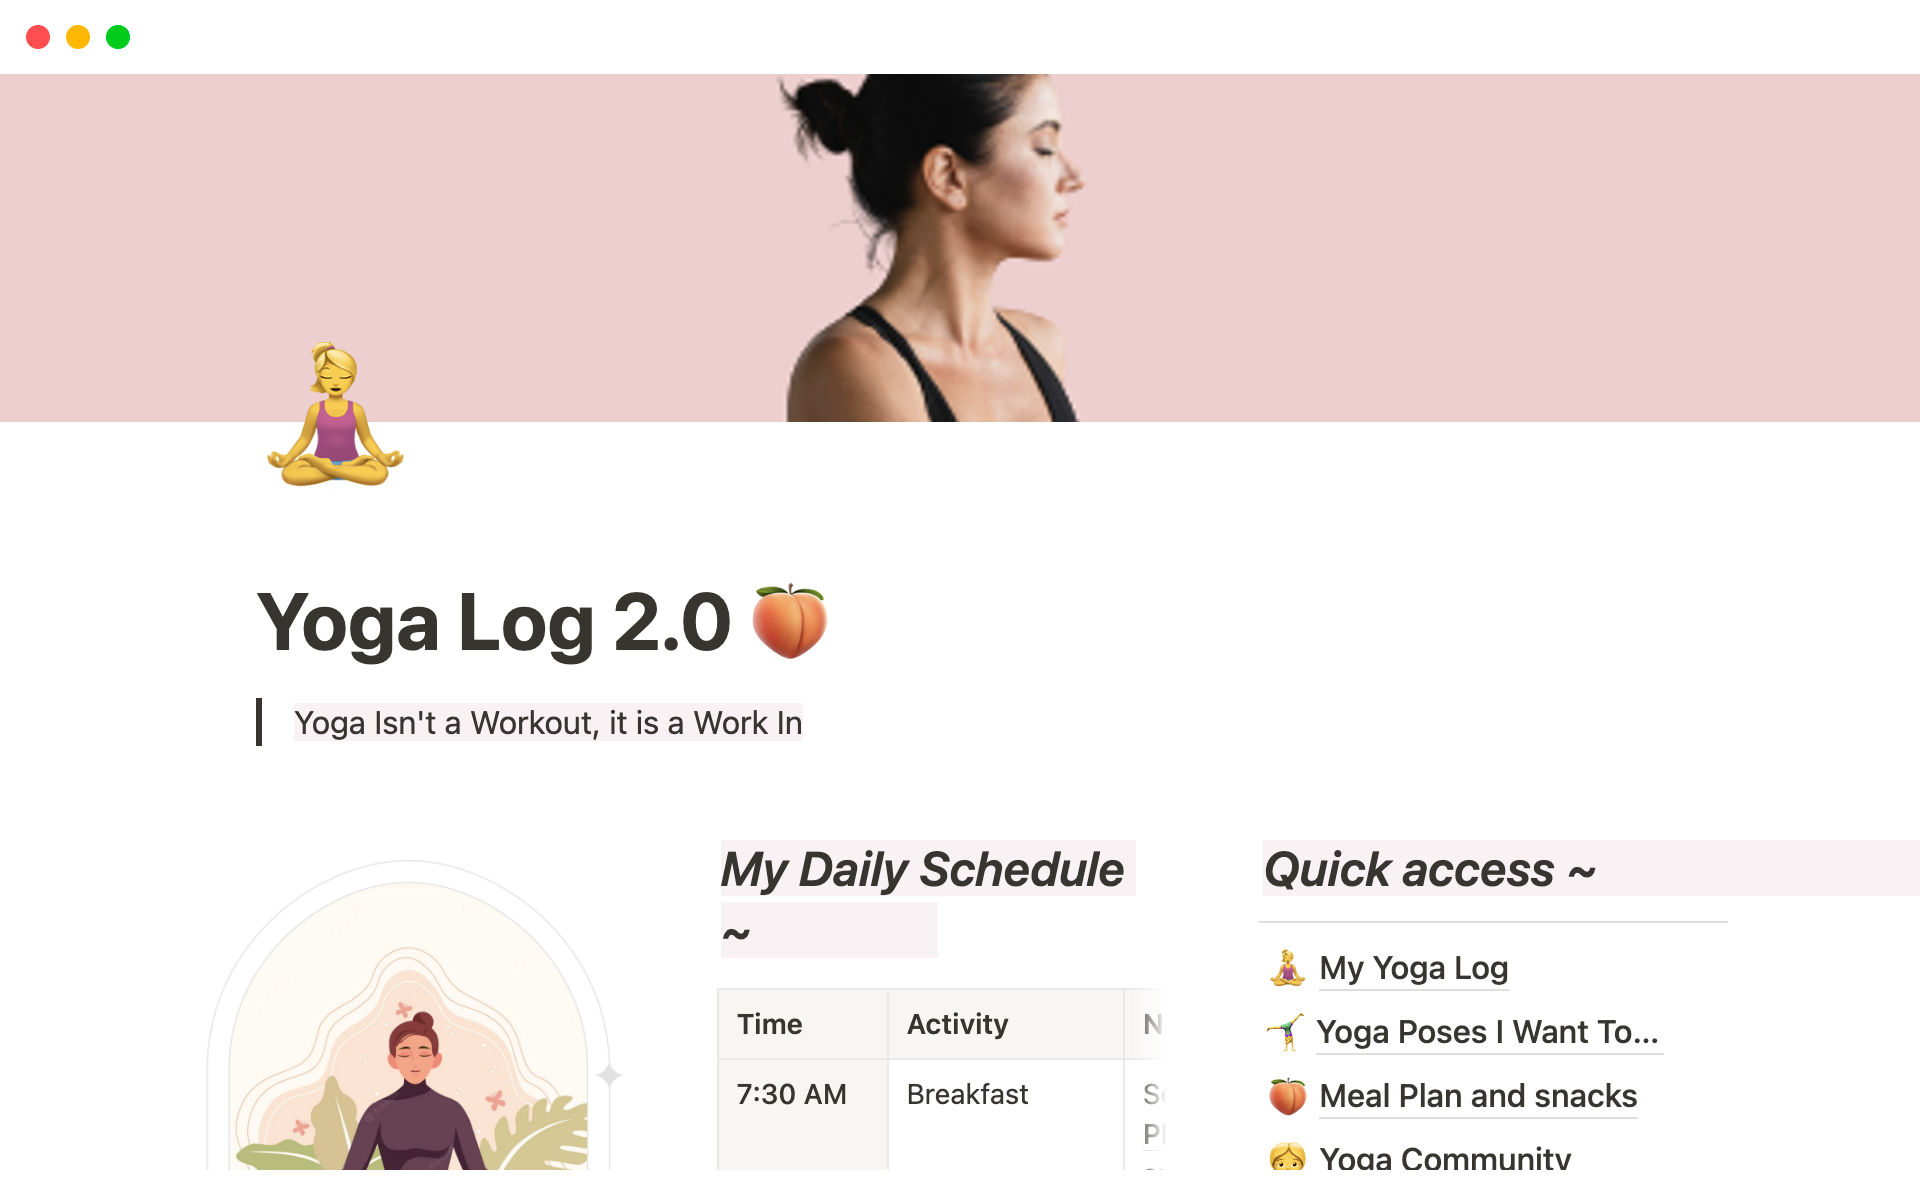 Vista previa de una plantilla para Yoga Log 2.0